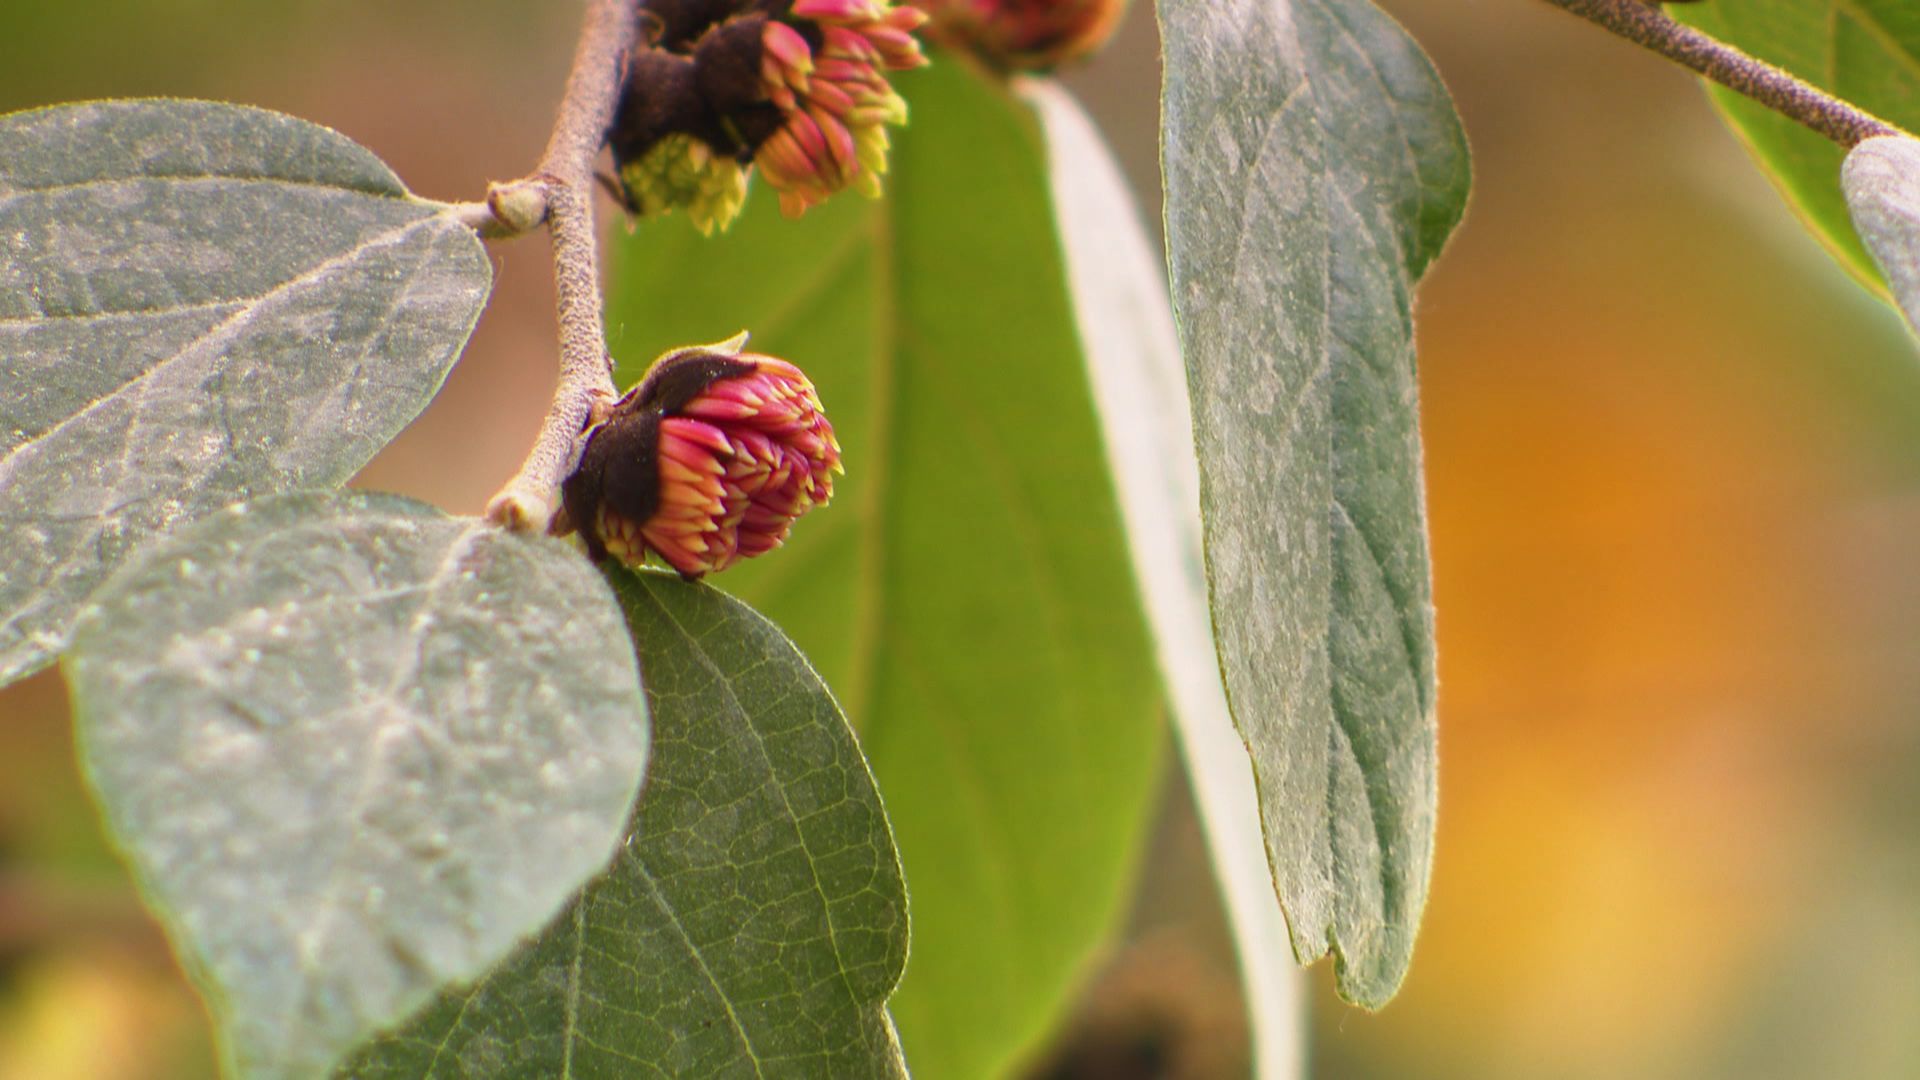 Le Sycoparrotia semidecidua fleurit à la fin de l’hiver en présence du feuillage qui se renouvellera au printemps.

